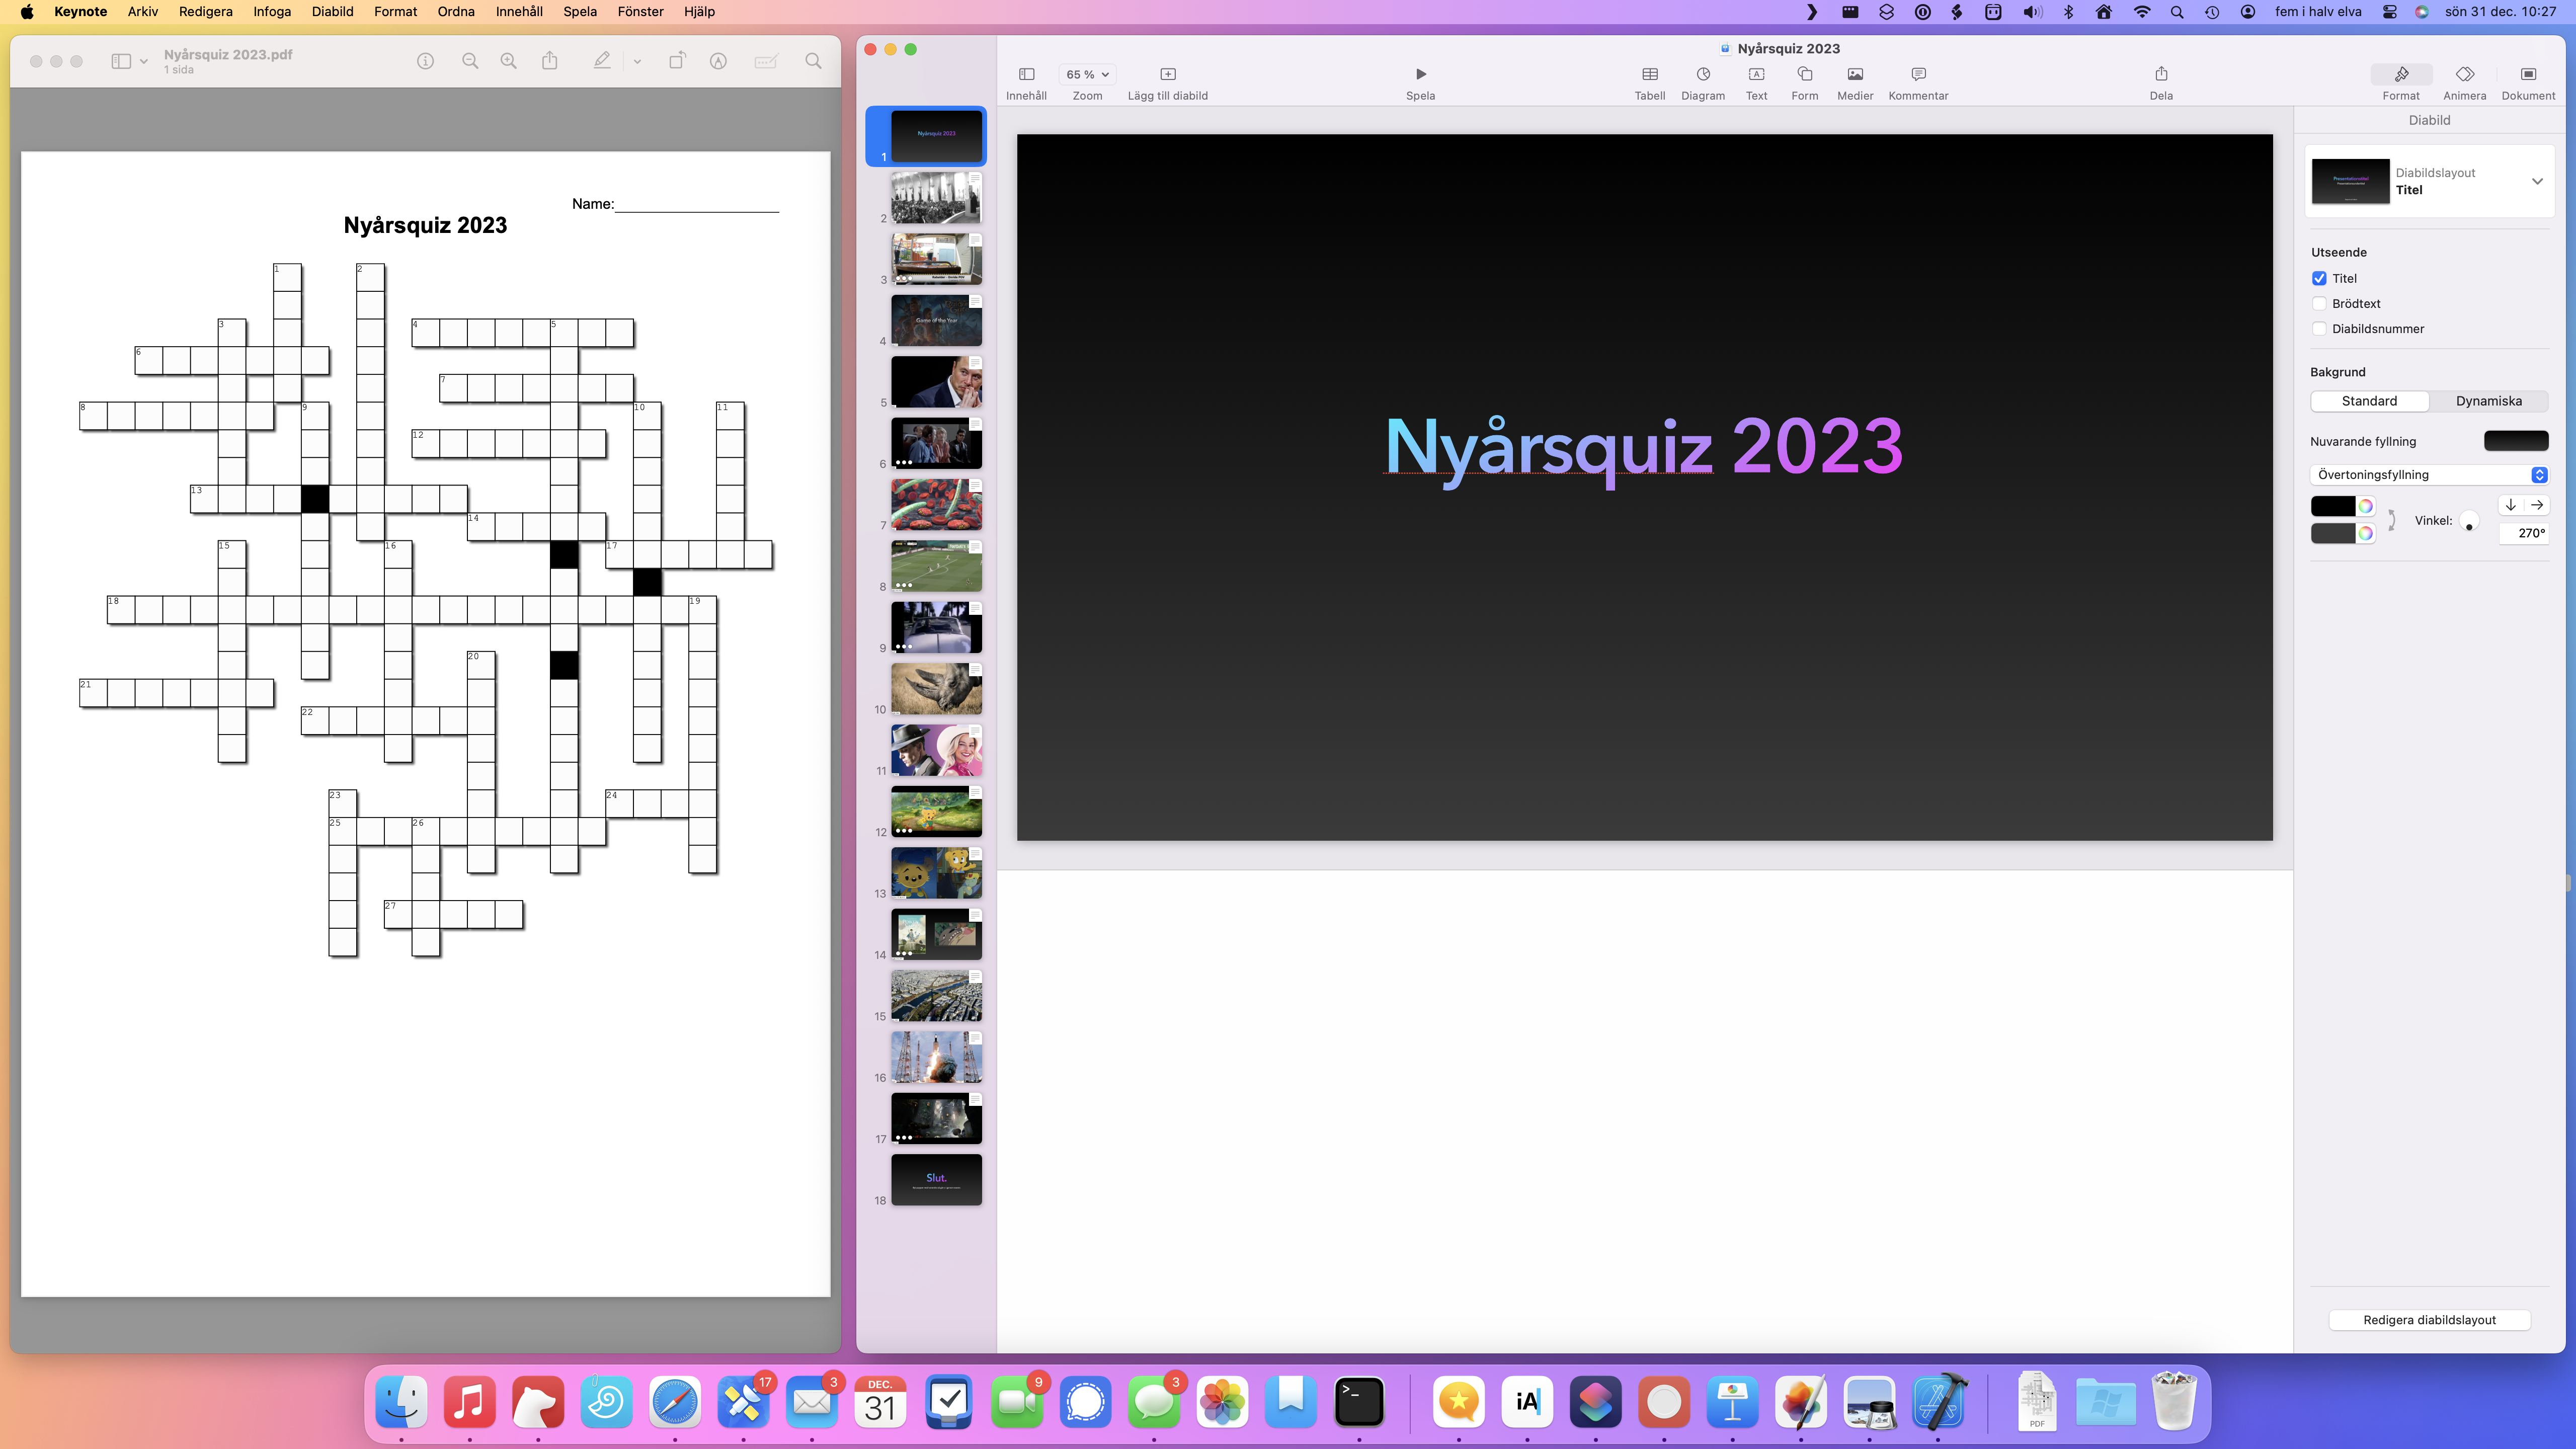 Skärmavbild av två fönster, sida vid sida. Ett innehållandes ett tomt korsord och ett fönster med Keynote och texten ”Nyårsquiz 2023”.